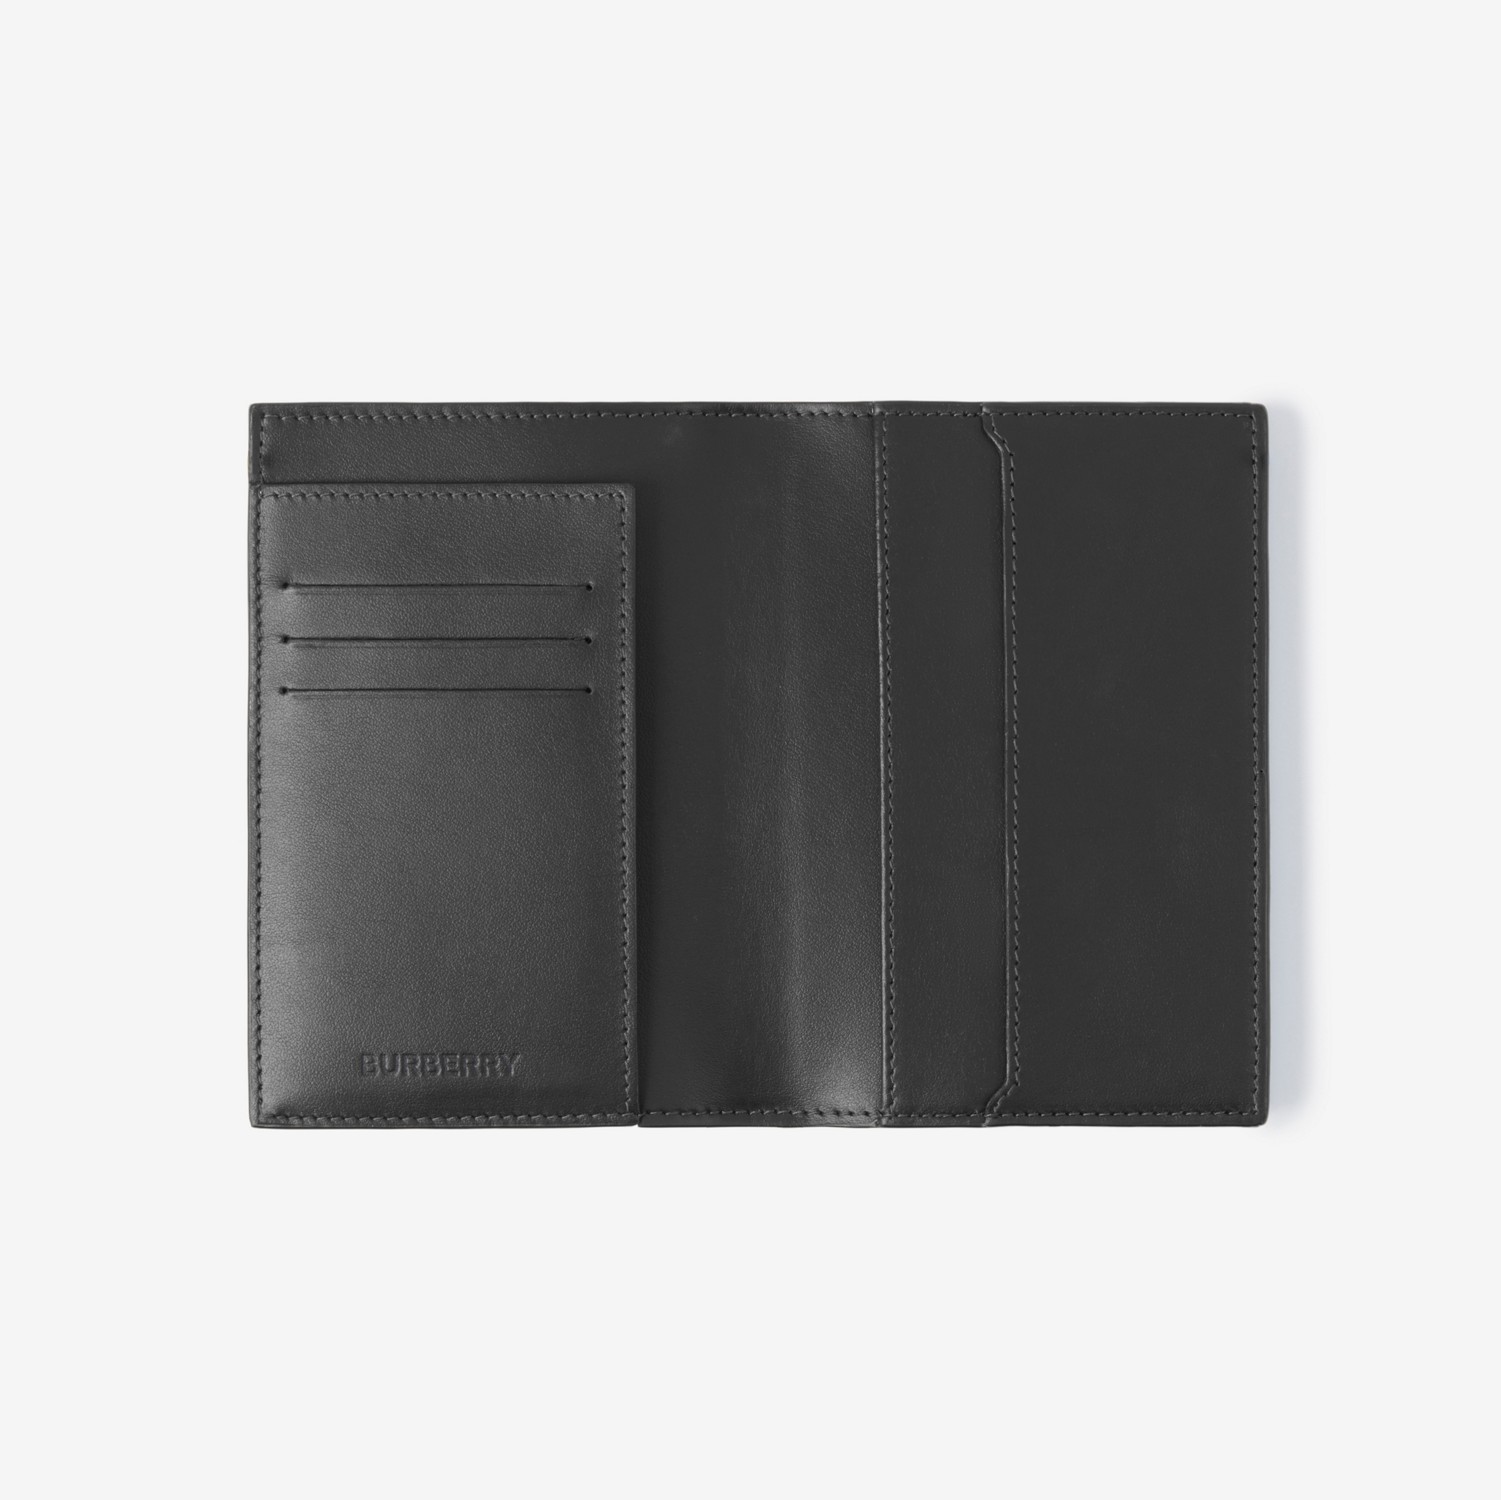 格纹拼皮革护照夹 (炭灰色) | Burberry® 博柏利官网